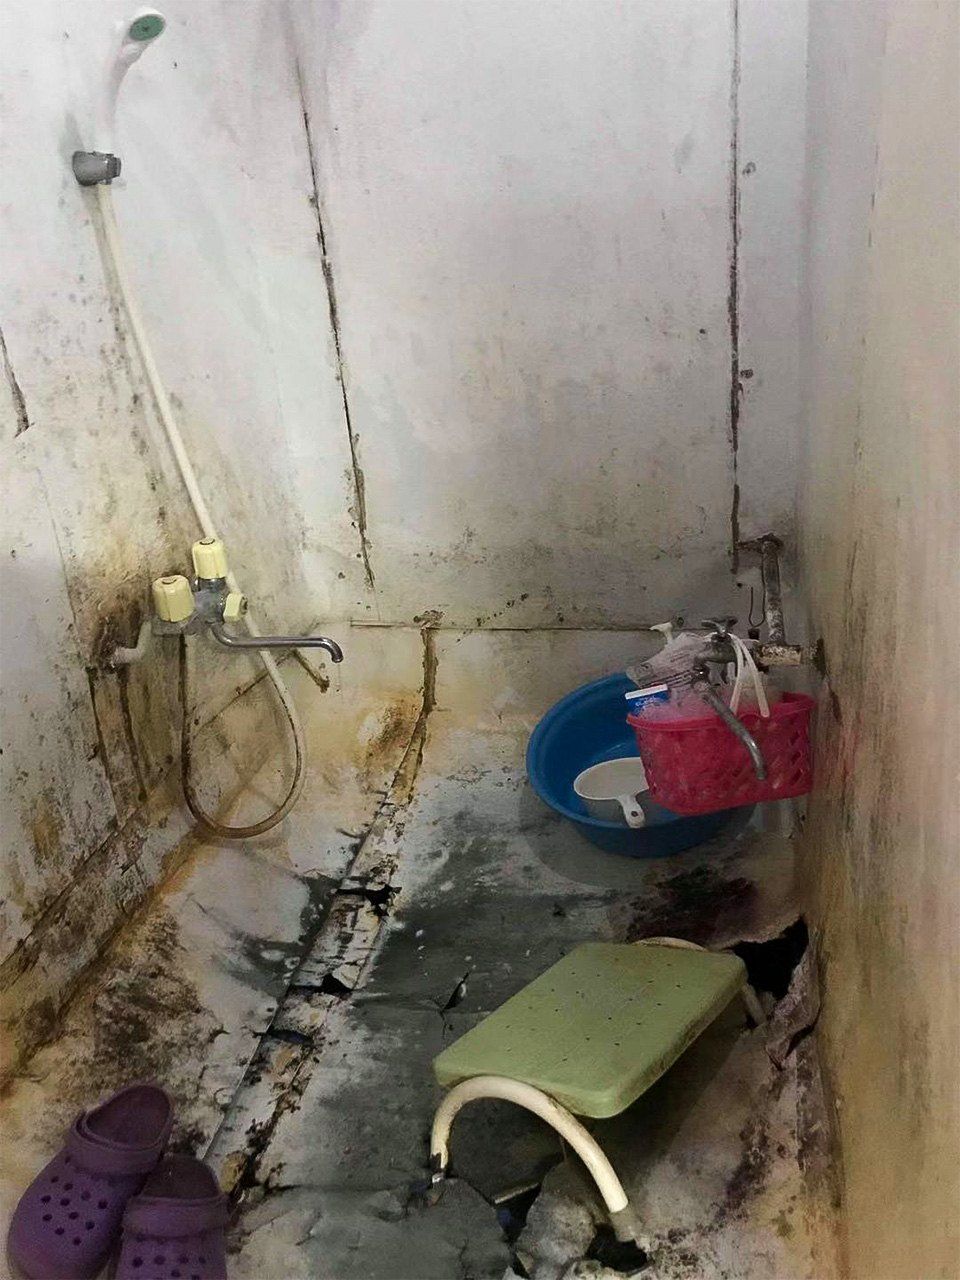 ある縫製会社で働くカンボジアの実習生の寮にあるシャワー室。実習生が暮らす場所は、このように環境の悪いところが多いという